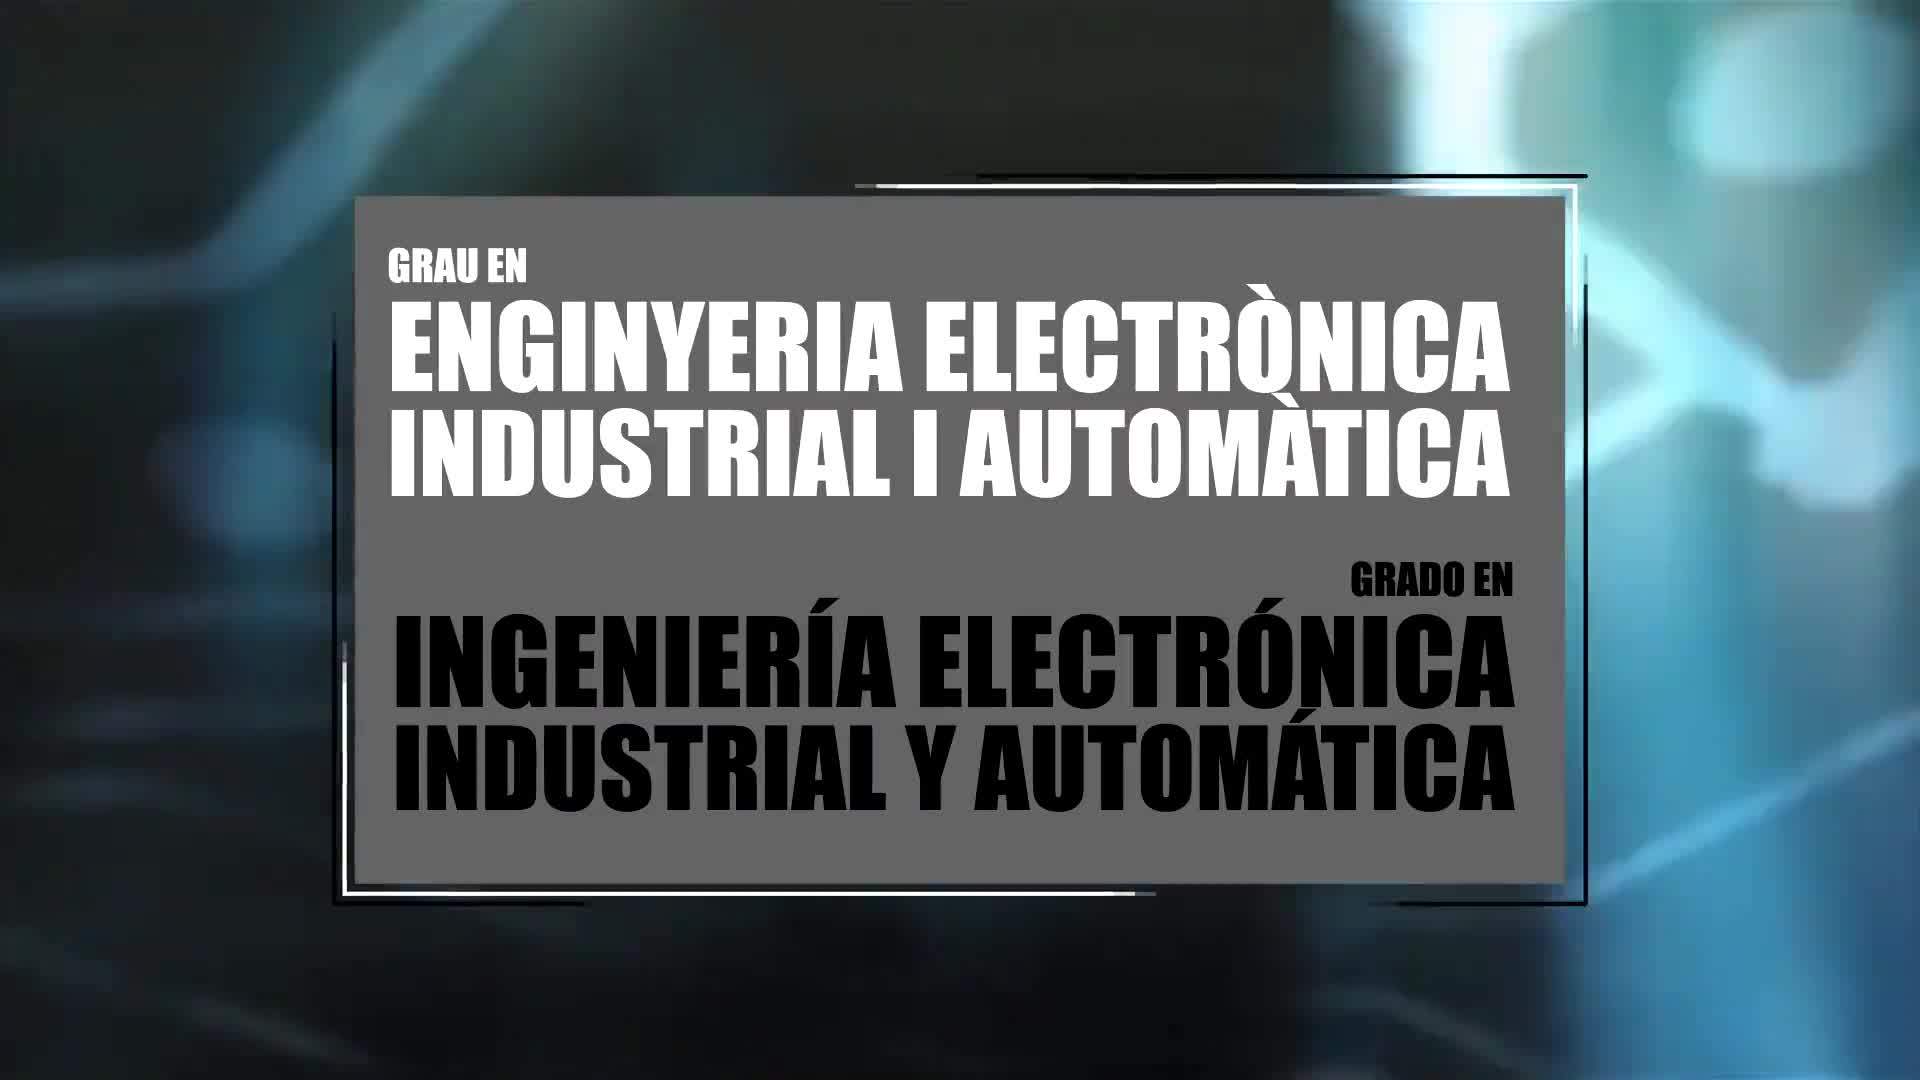 22-04-2020 Grado en Ingeniería Electrónica Industrial y Automática